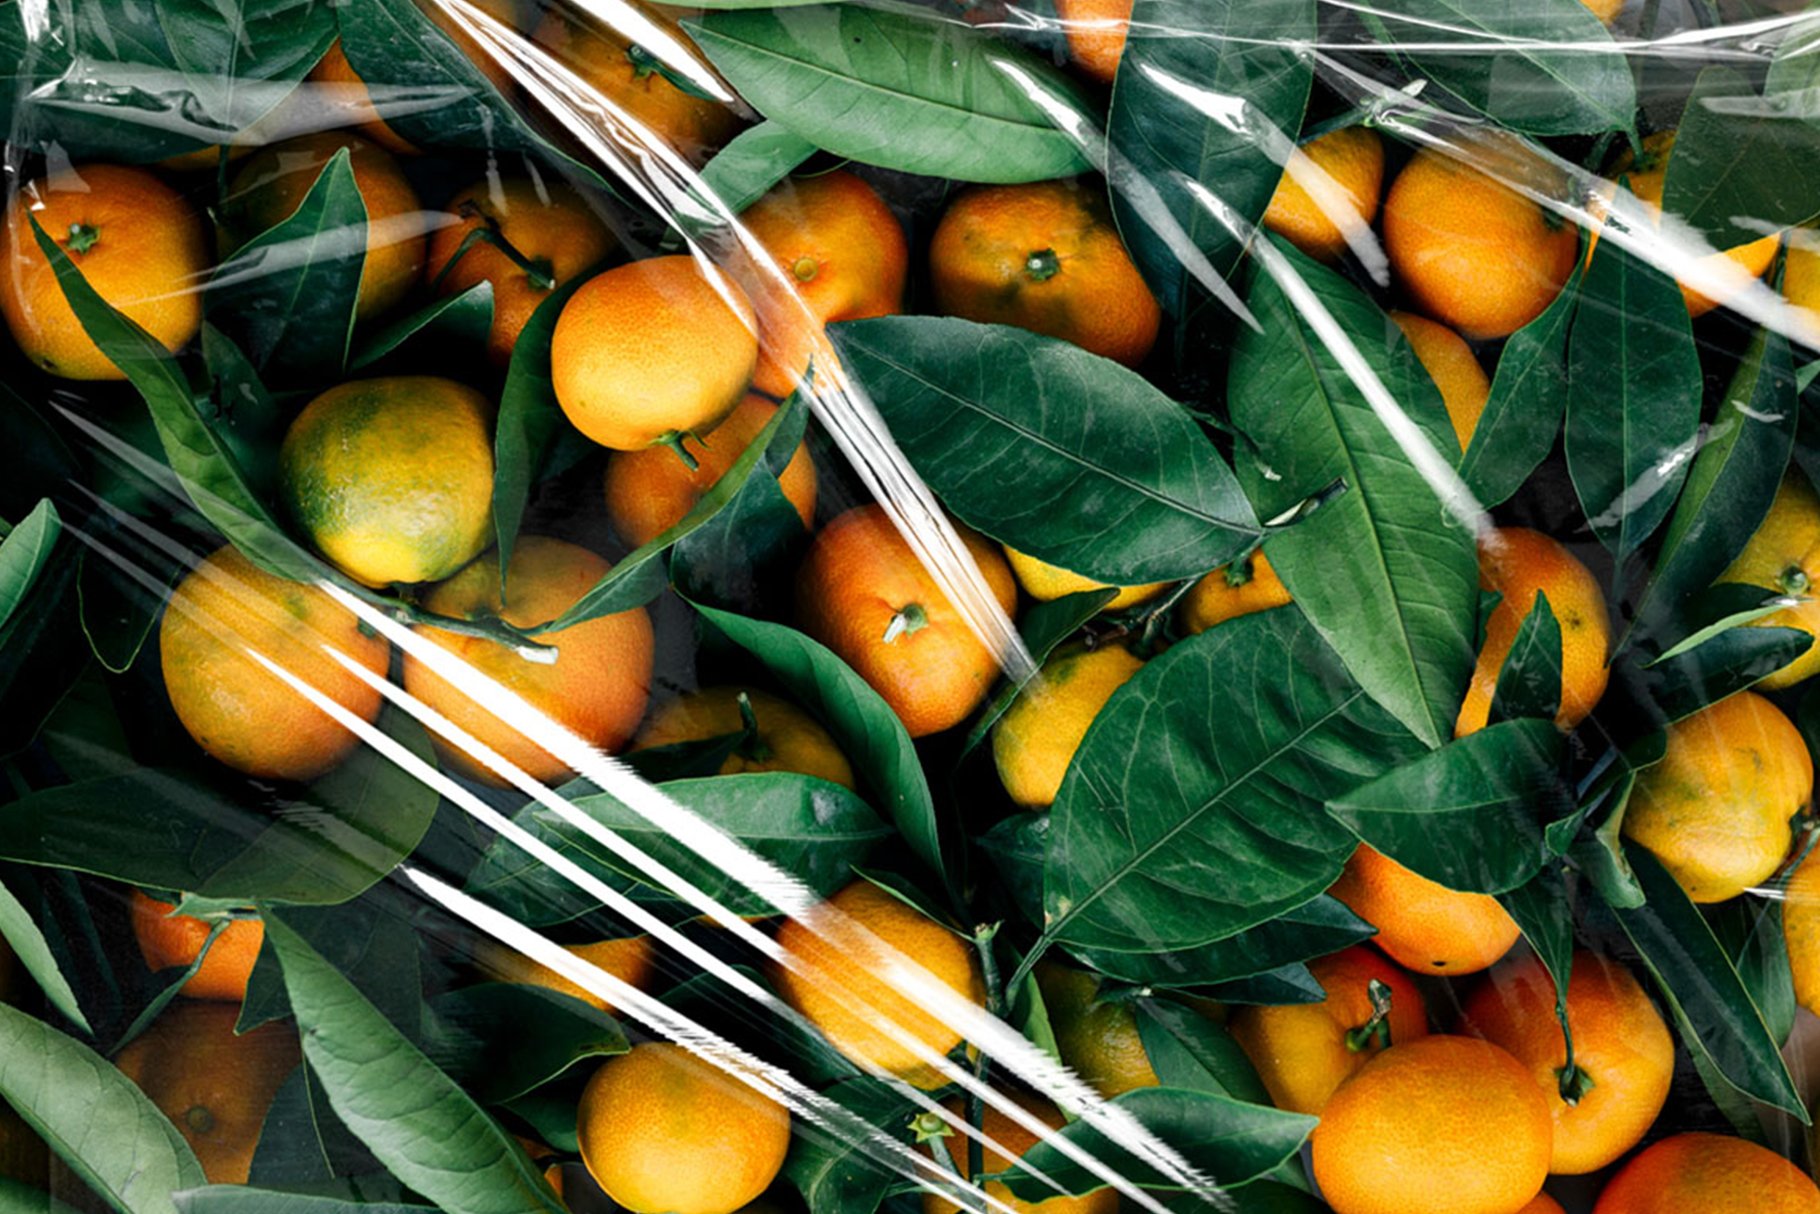 Oranges with plastic texture.